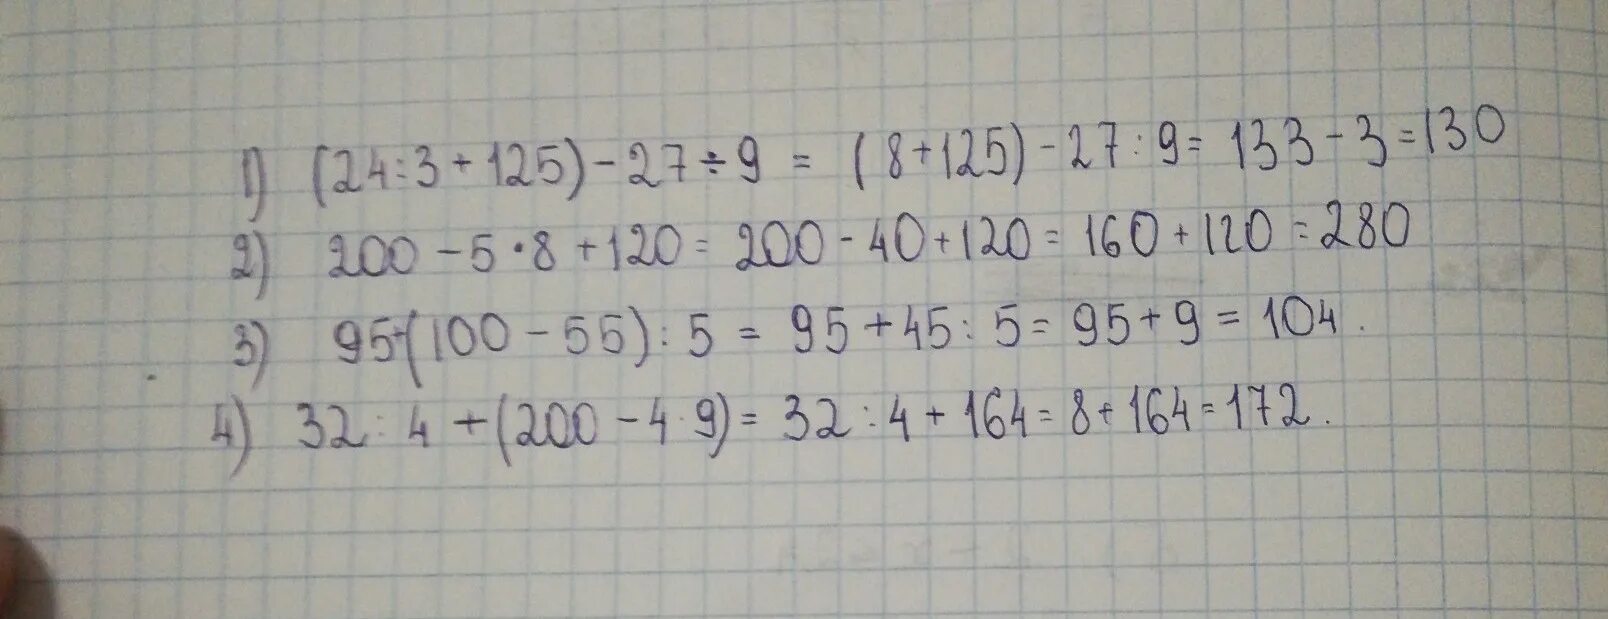 3 125 1 8 5 32. 4.200/25. 200•4+200=. 100-27×9-4×3. 125√5:5√5=.